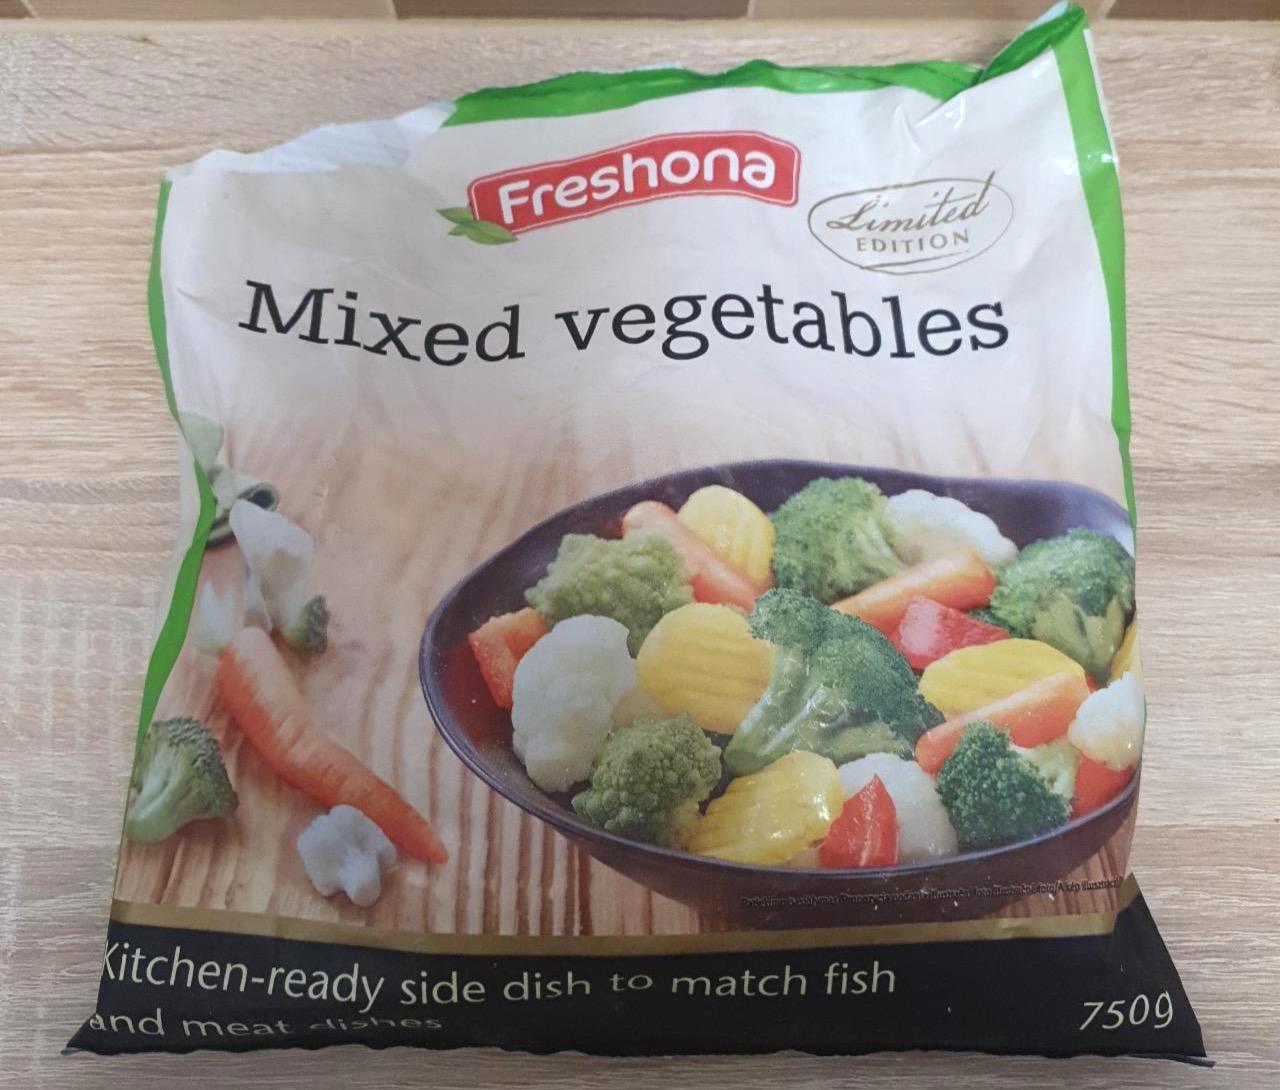 Képek - Mixed vegetables limited edition Freshona